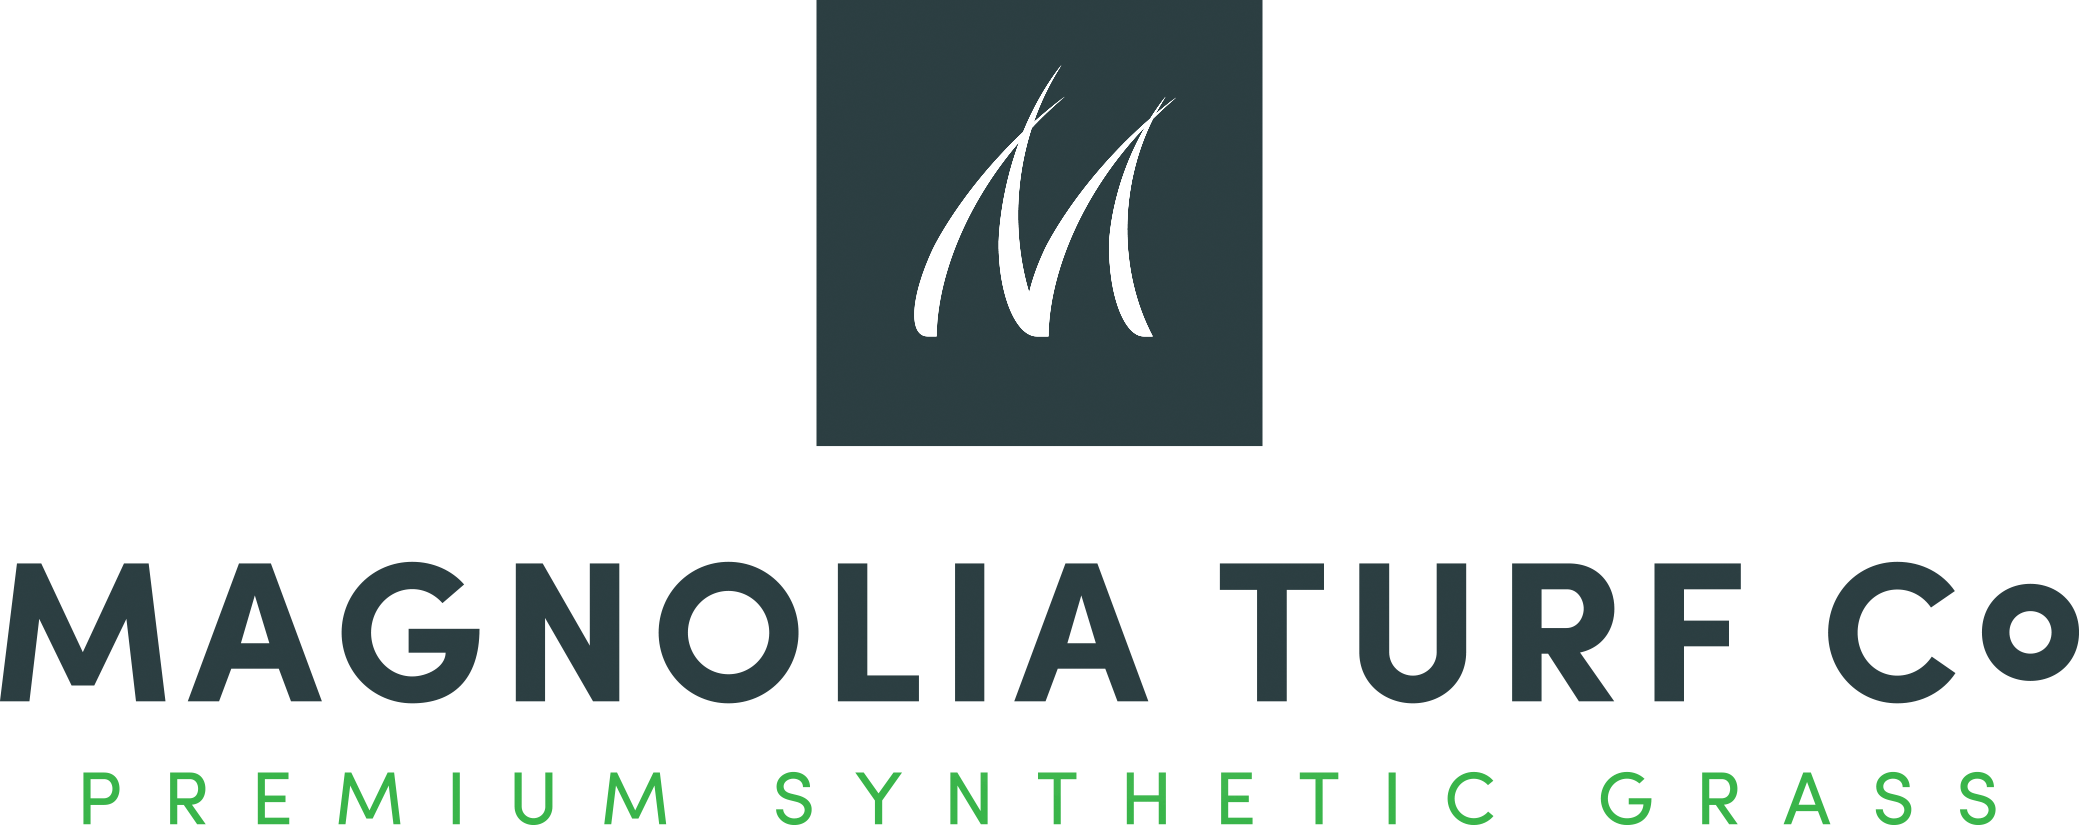 Magnolia Turf Co Logo